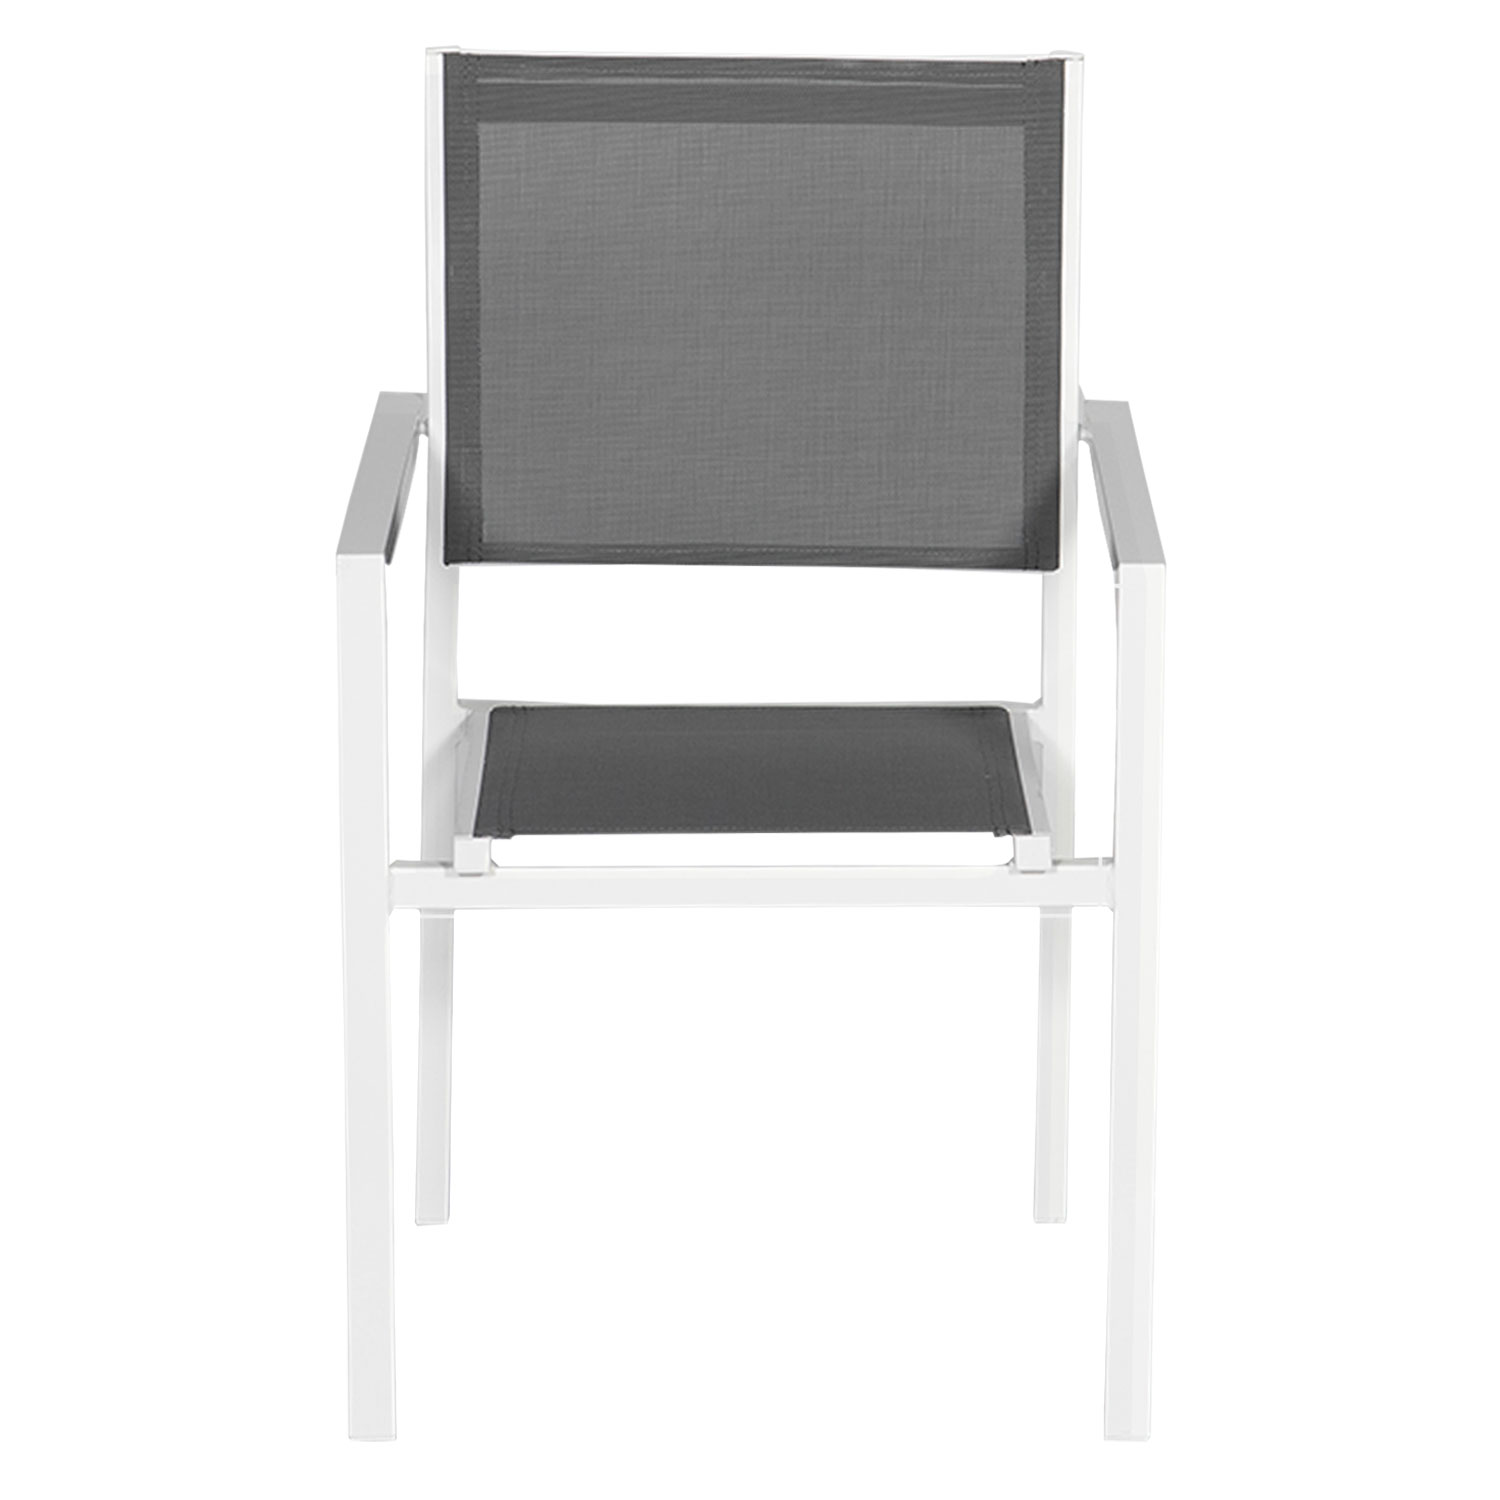 Juego de 4 sillas de aluminio blanco - textilene gris